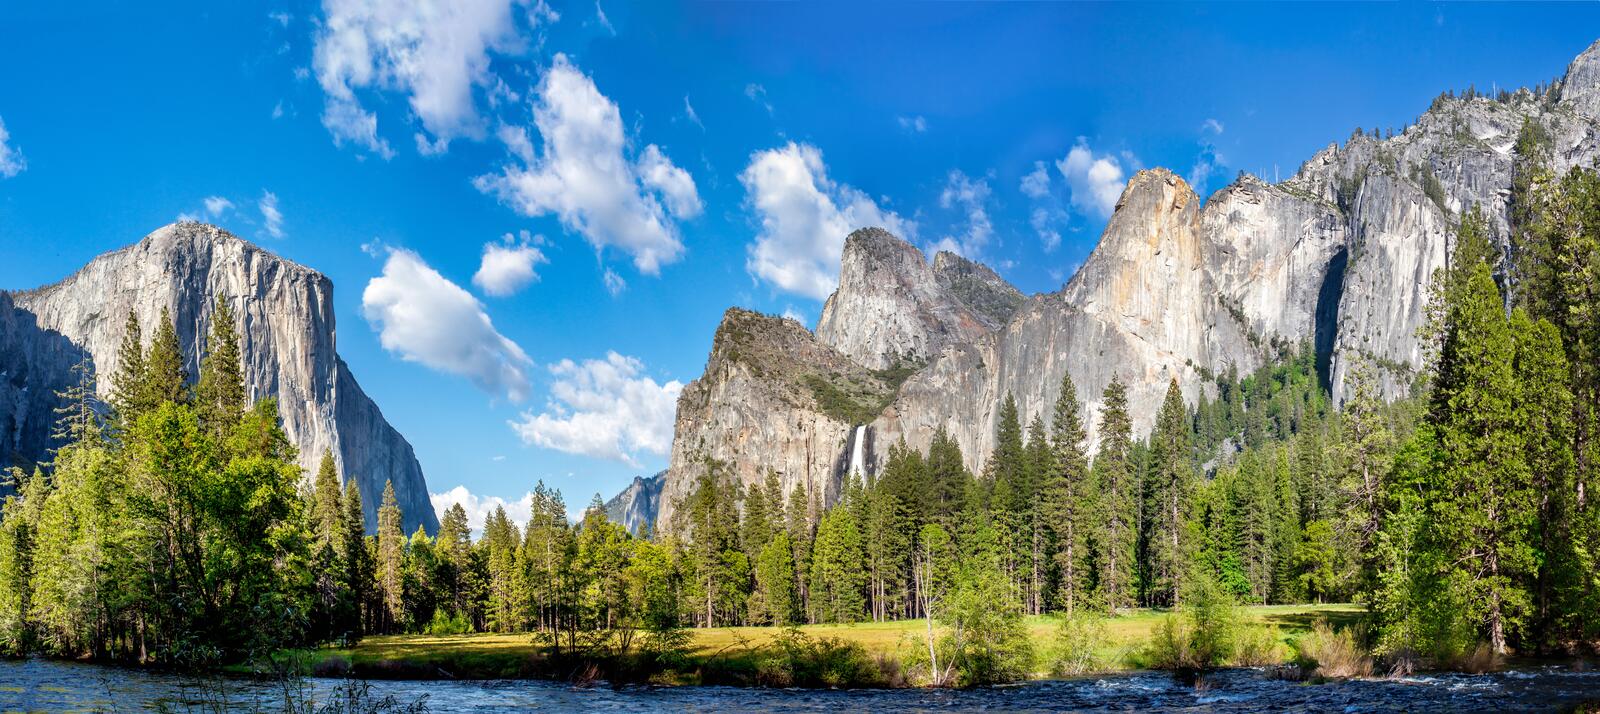 Обои панорама Йосемитский национальный парк национальный парк Йосемити на рабочий стол